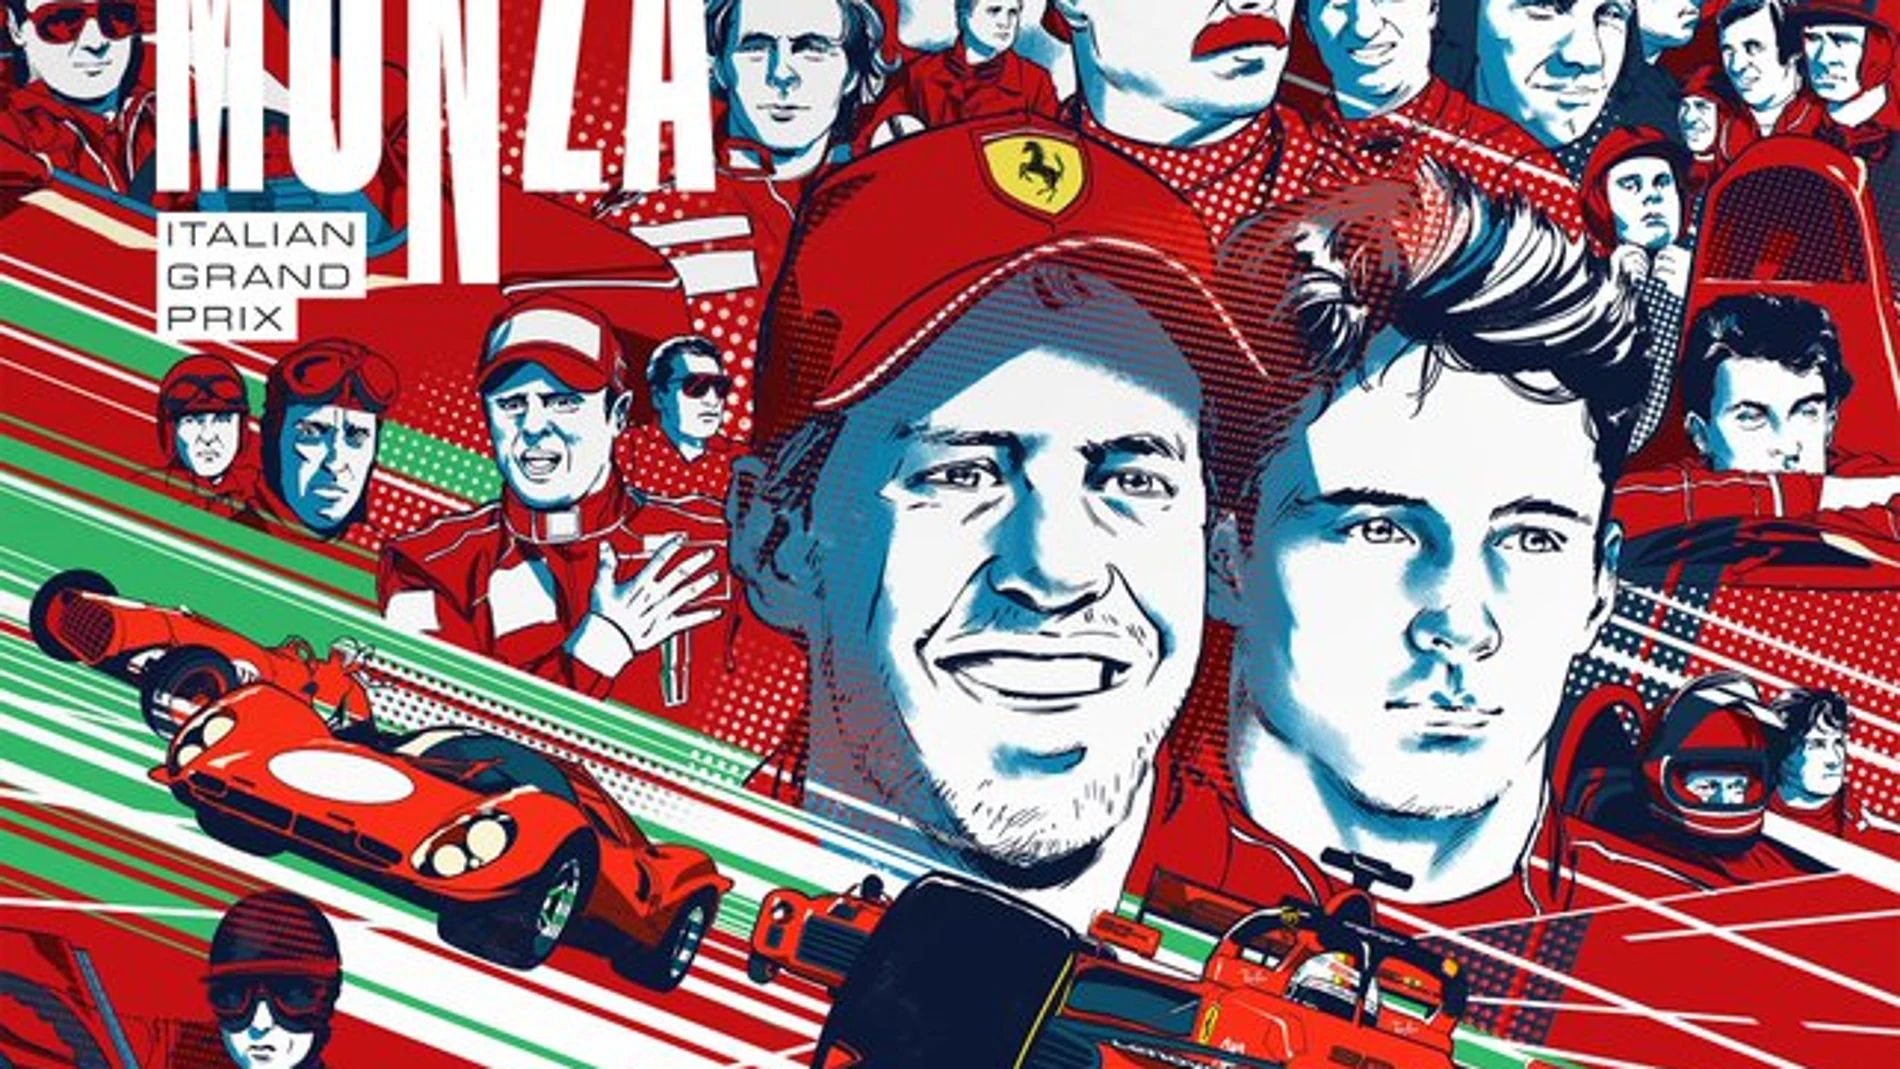 El cartel de Ferrari celebrando el 90 aniversario de Monza